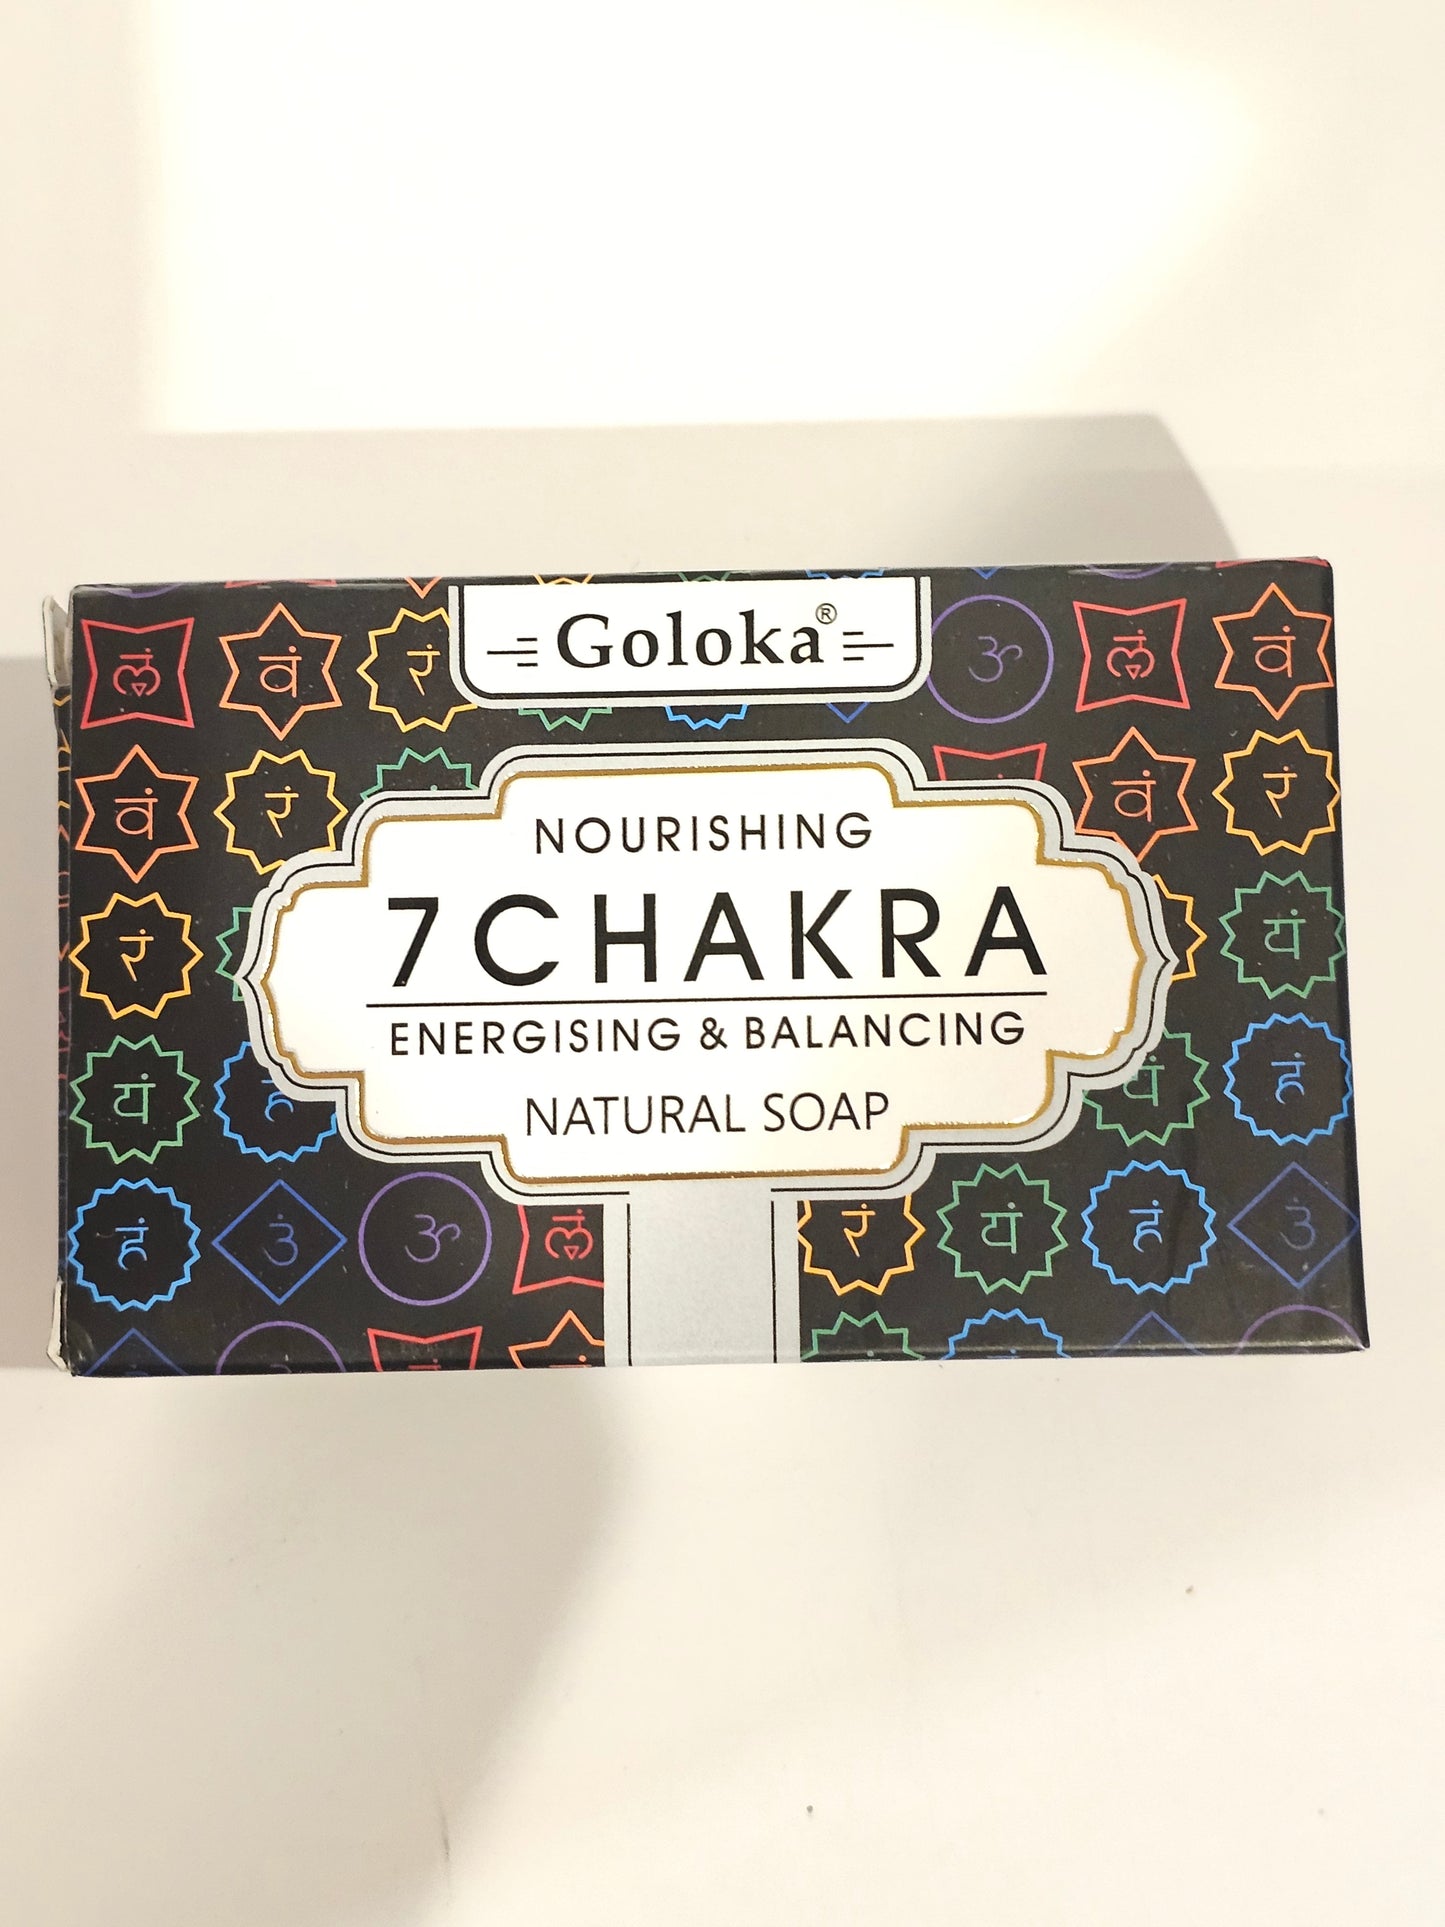 Goloka Nourishing 7 Chakra Natural Soap | Energising & Balancing 